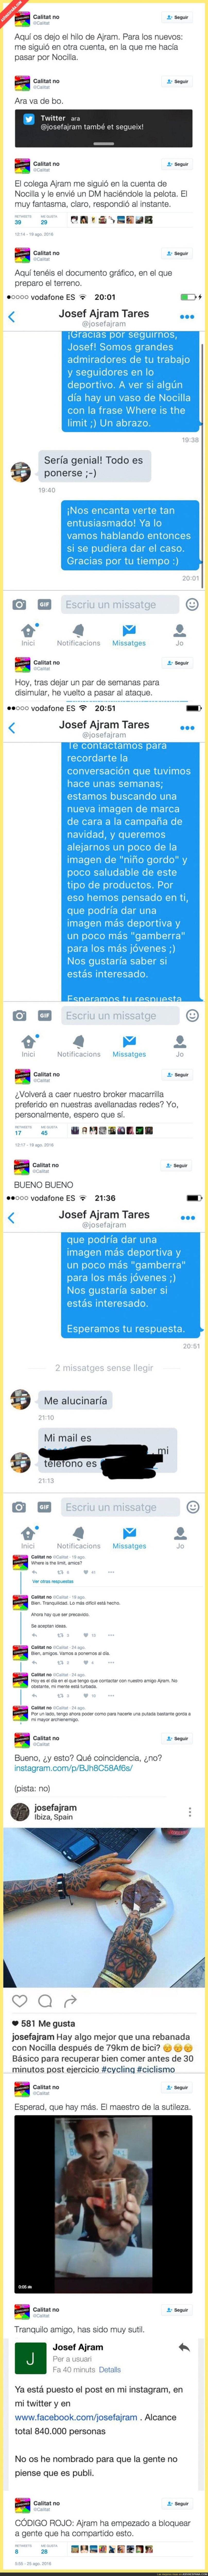 Trolean al 'broker' Josef Ajram y termina publicitando a Nocilla en redes sociales de forma gratuita